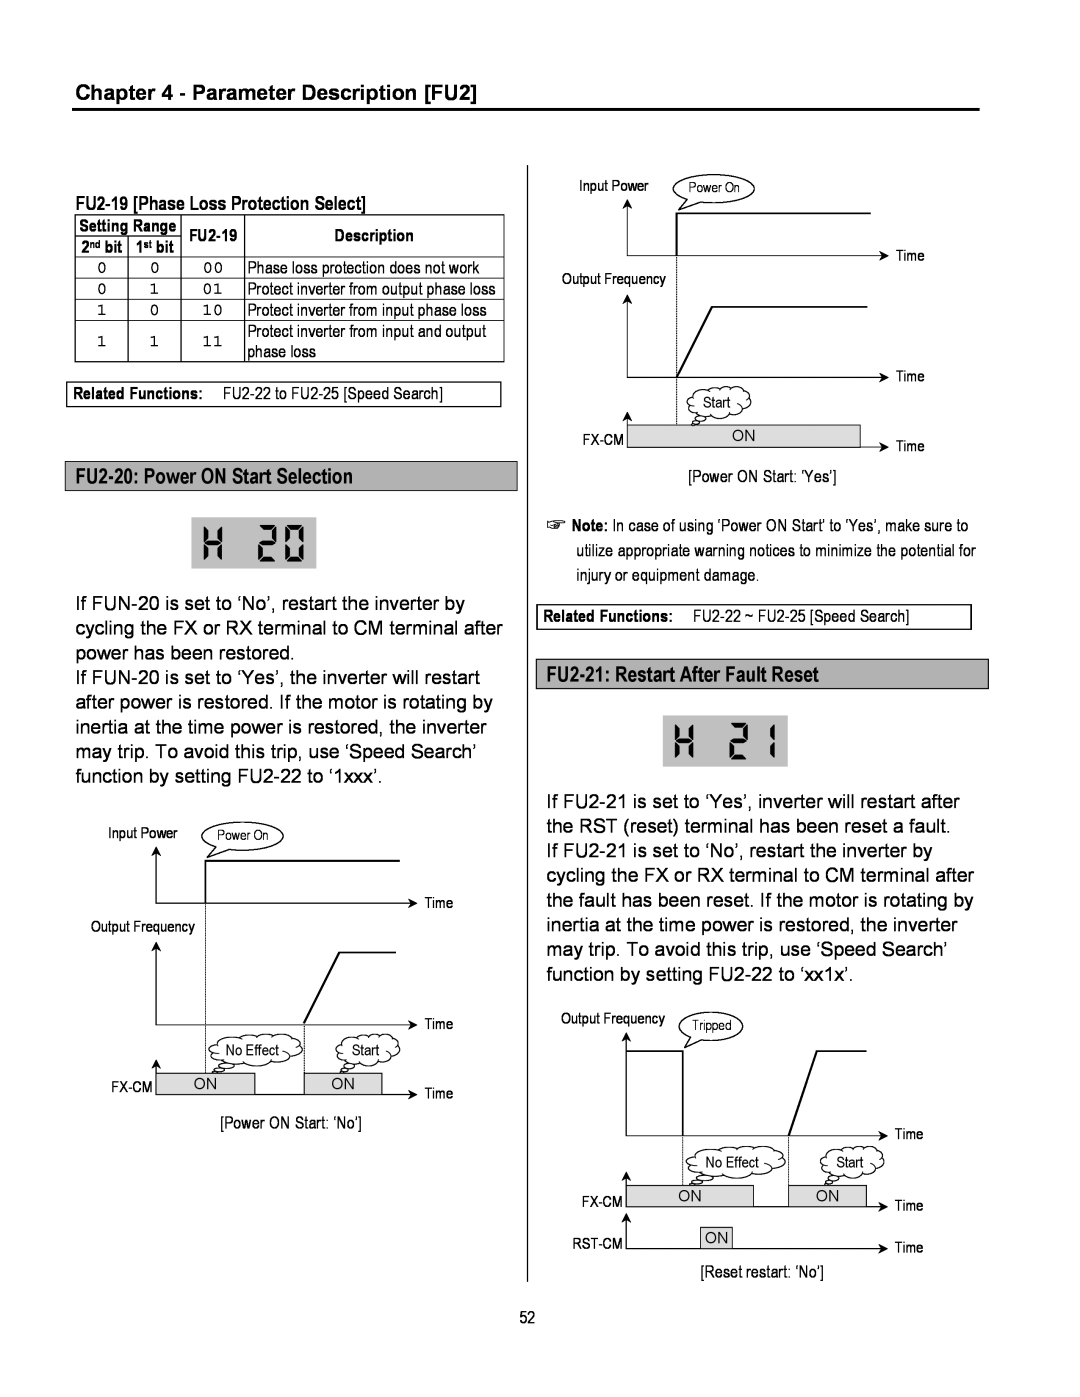 Cleveland Range inverter Parameter Description FU2, FU2-20 Power ON Start Selection, FU2-21 Restart After Fault Reset 